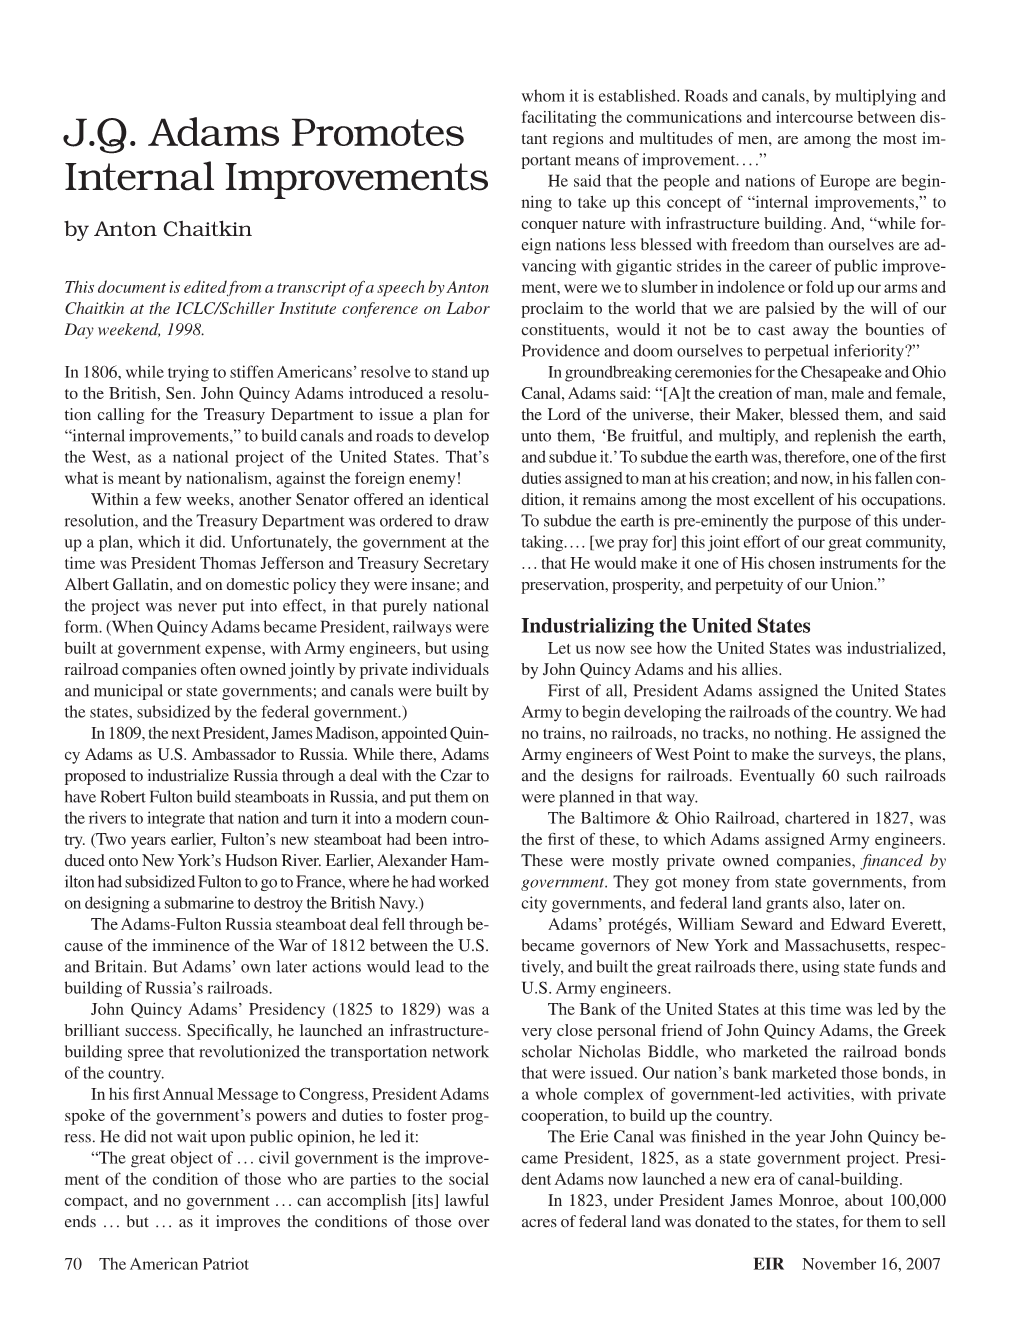 J.Q. Adams Promotes Internal Improvements